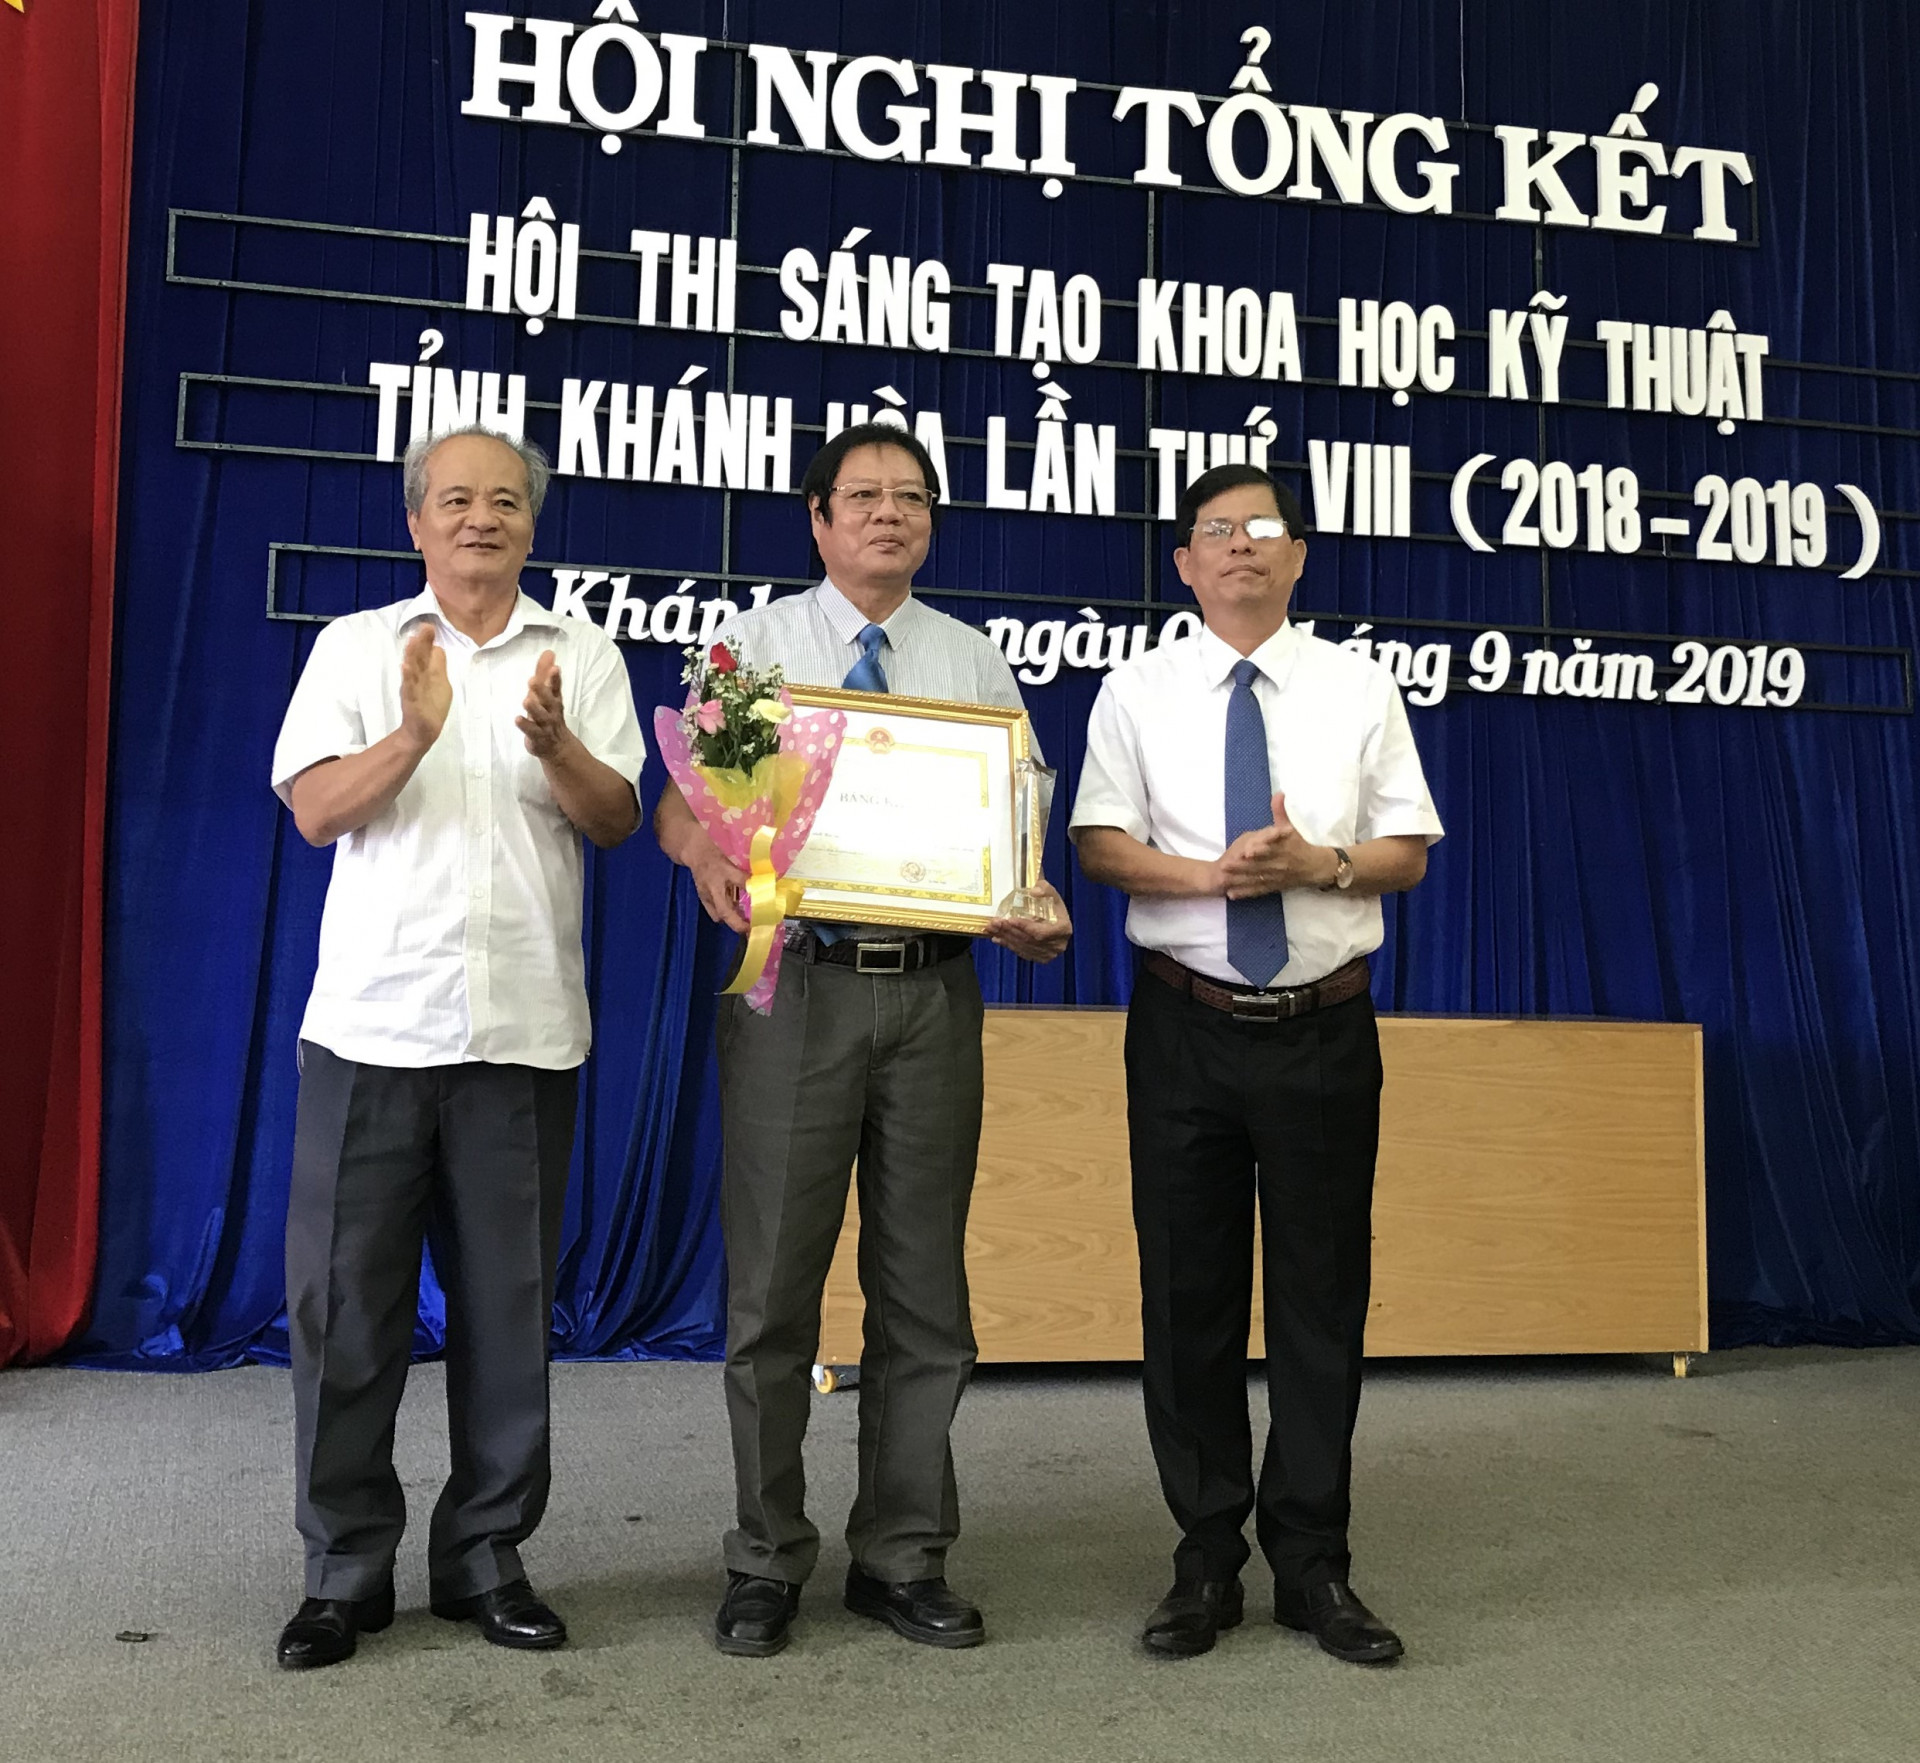 Ông Nguyễn Tấn Tuân (bìa phải) trao giải Nhất cho tác giả